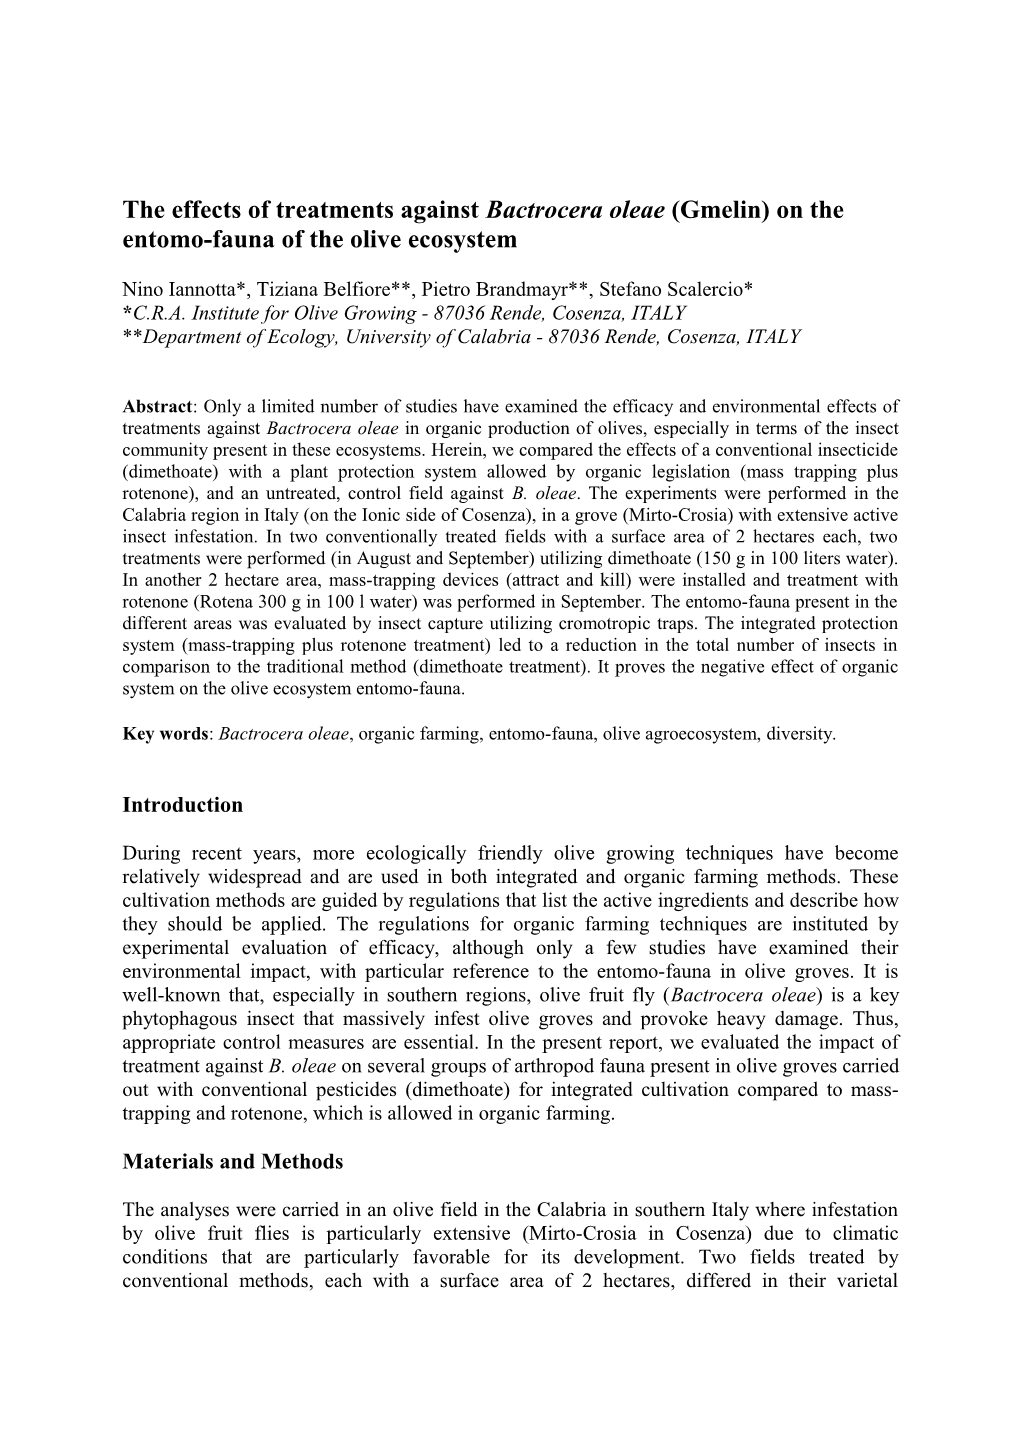 Effetti Di Trattamenti Contro Bactrocera Oleae Sull Entomocenosi Dell Ecosistema Oliveto